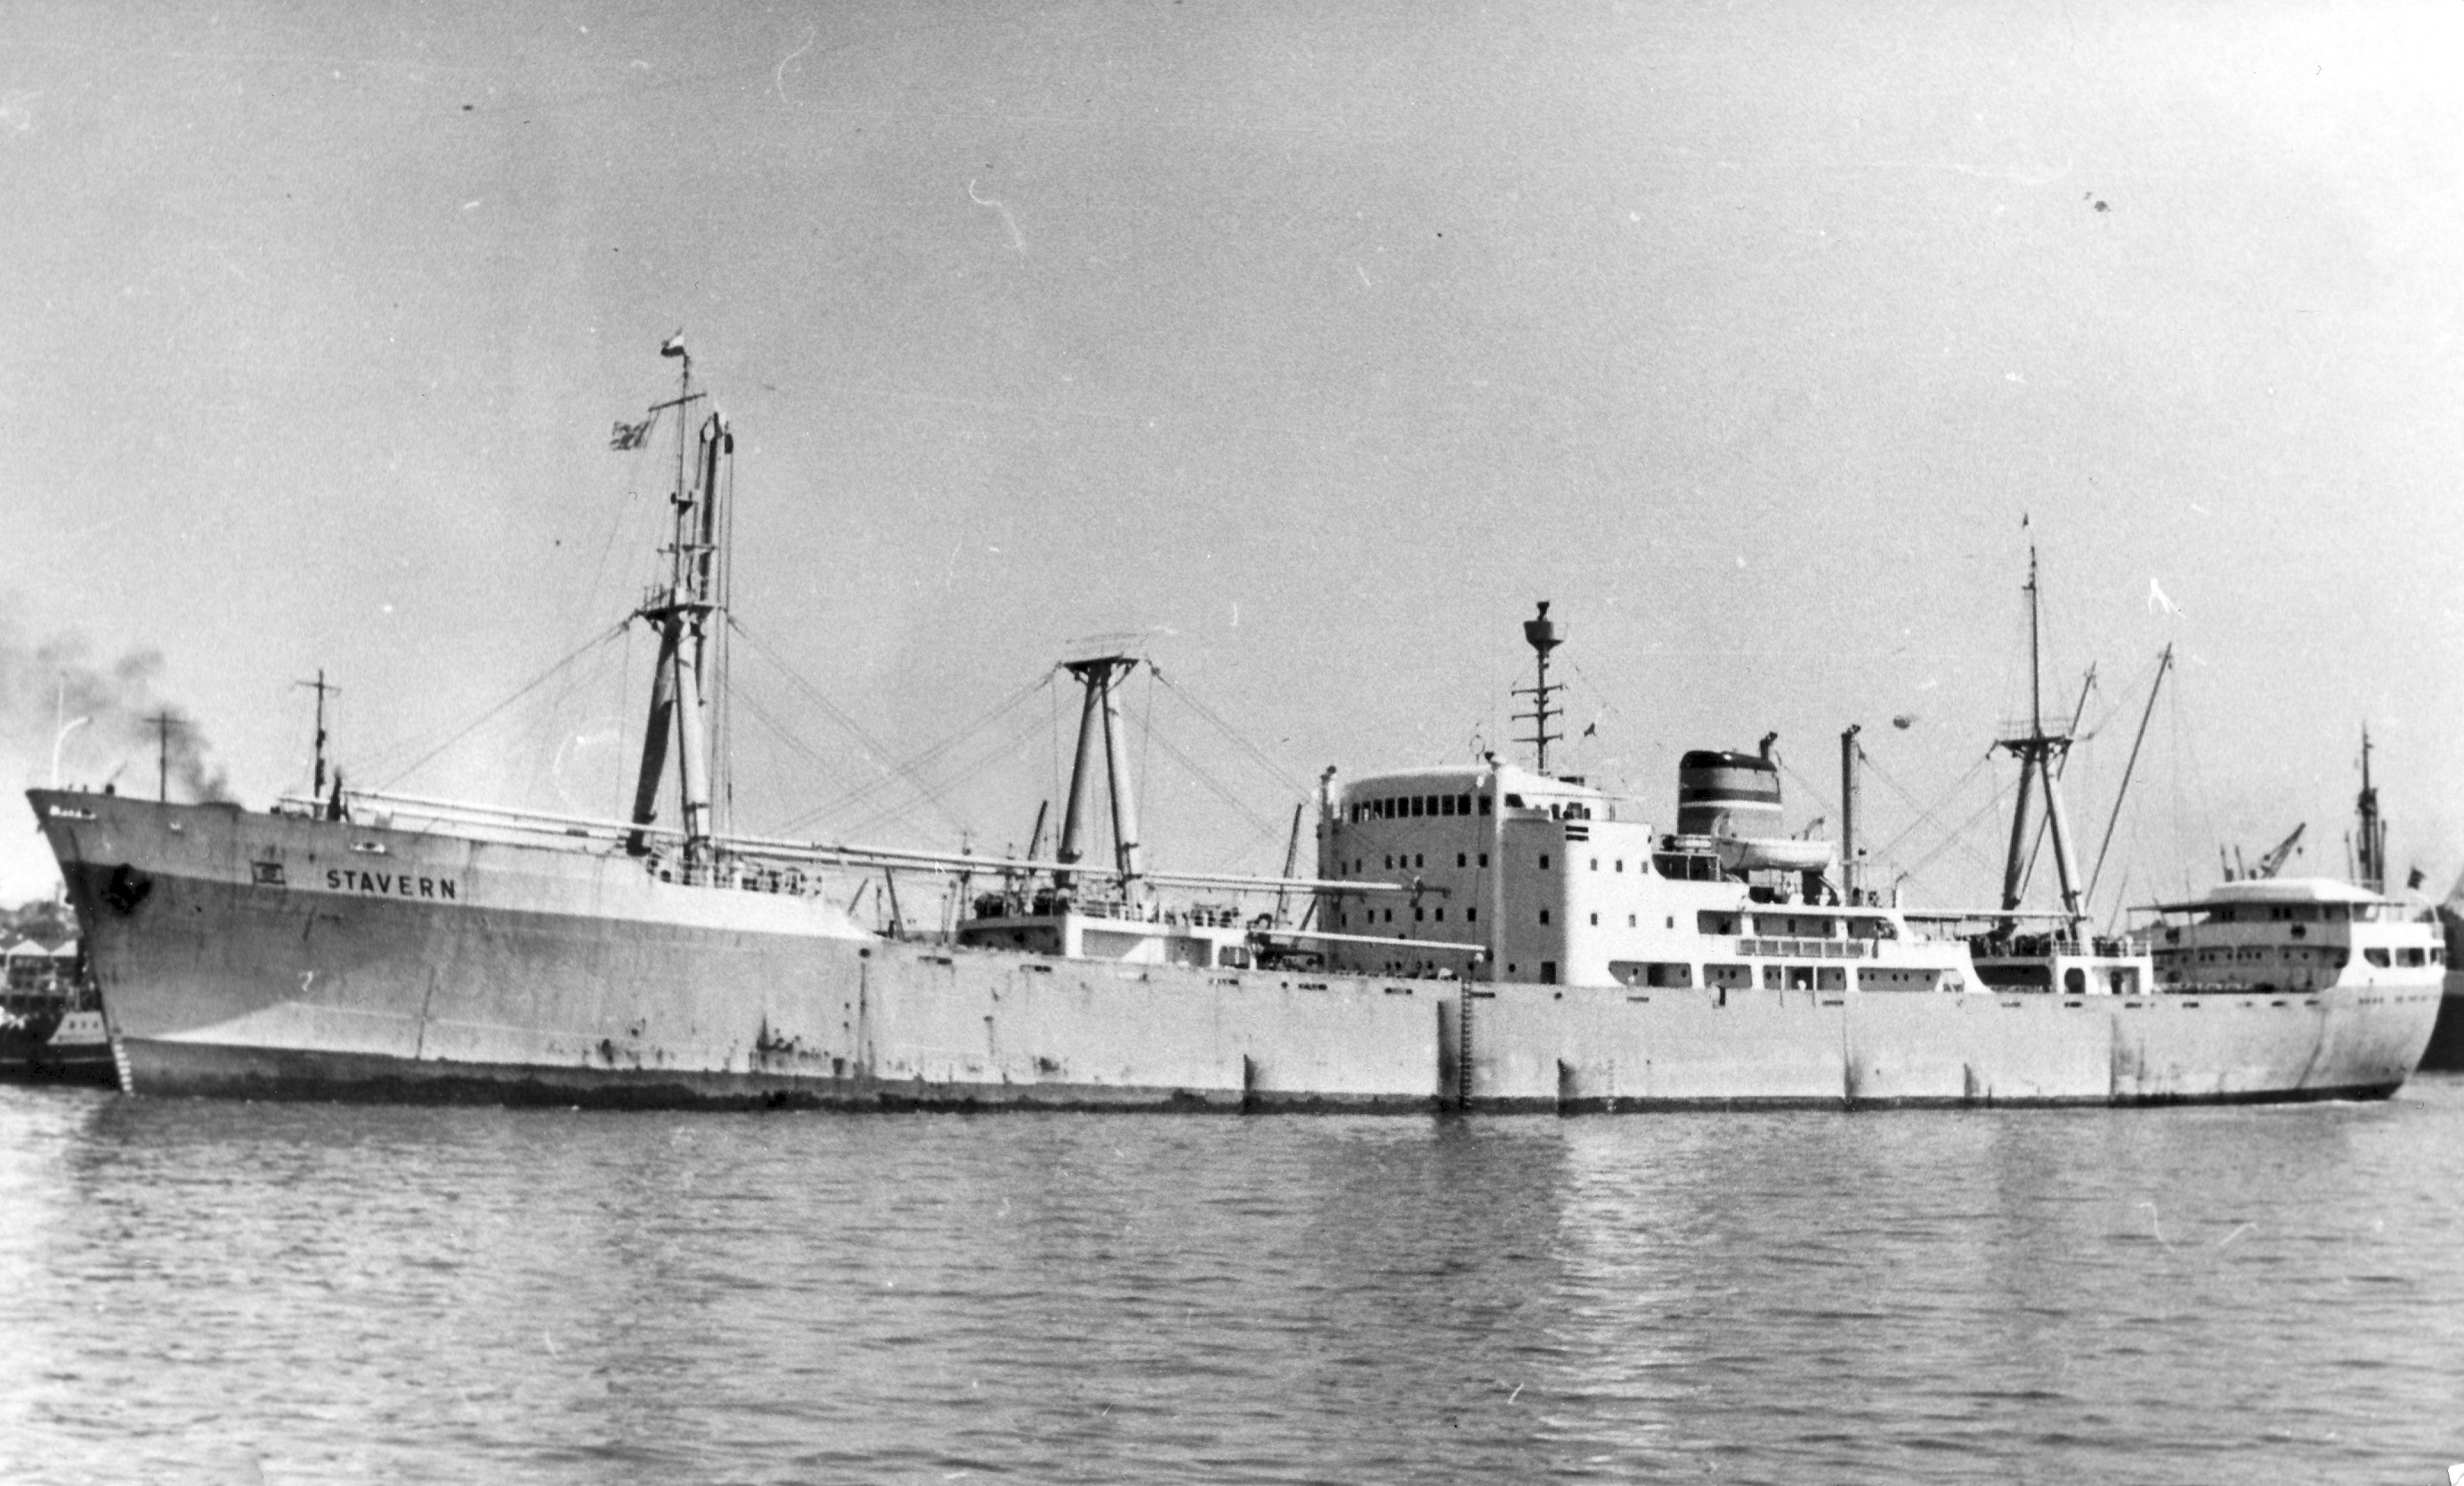 Stavern 1960 Safmarine